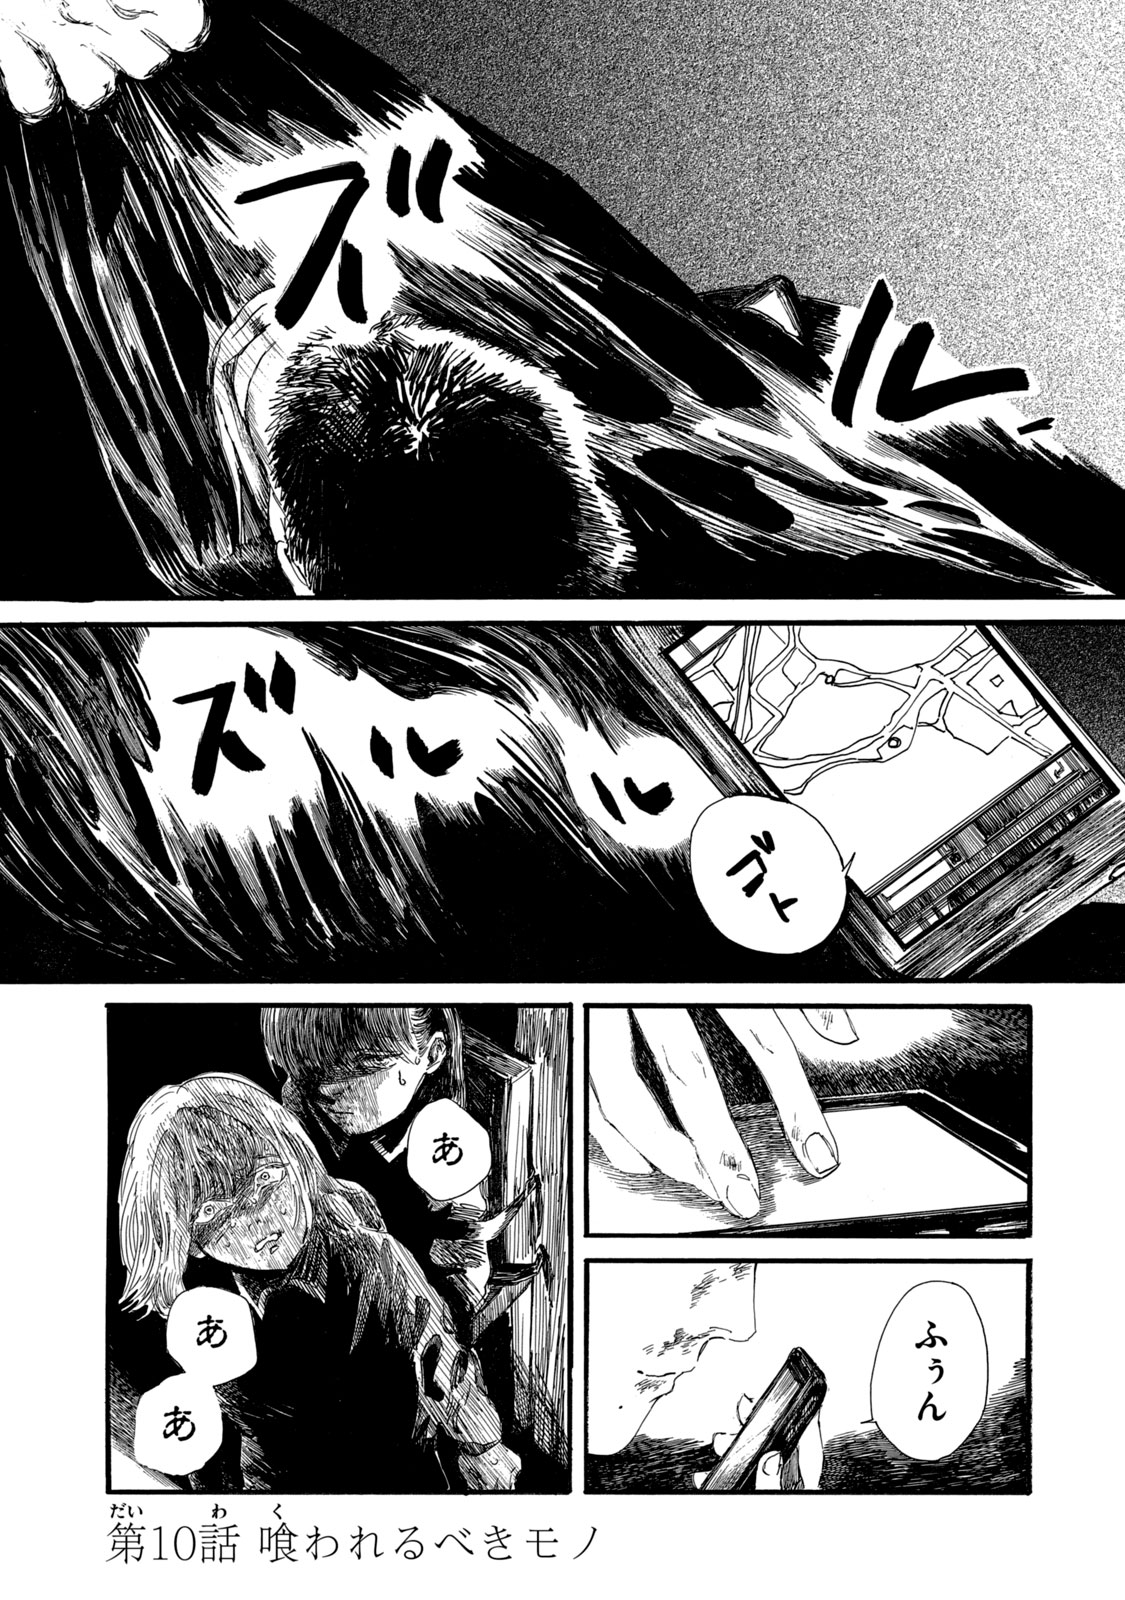 Watashi no Hara no Naka no Bakemono - Chapter 24 - Page 1